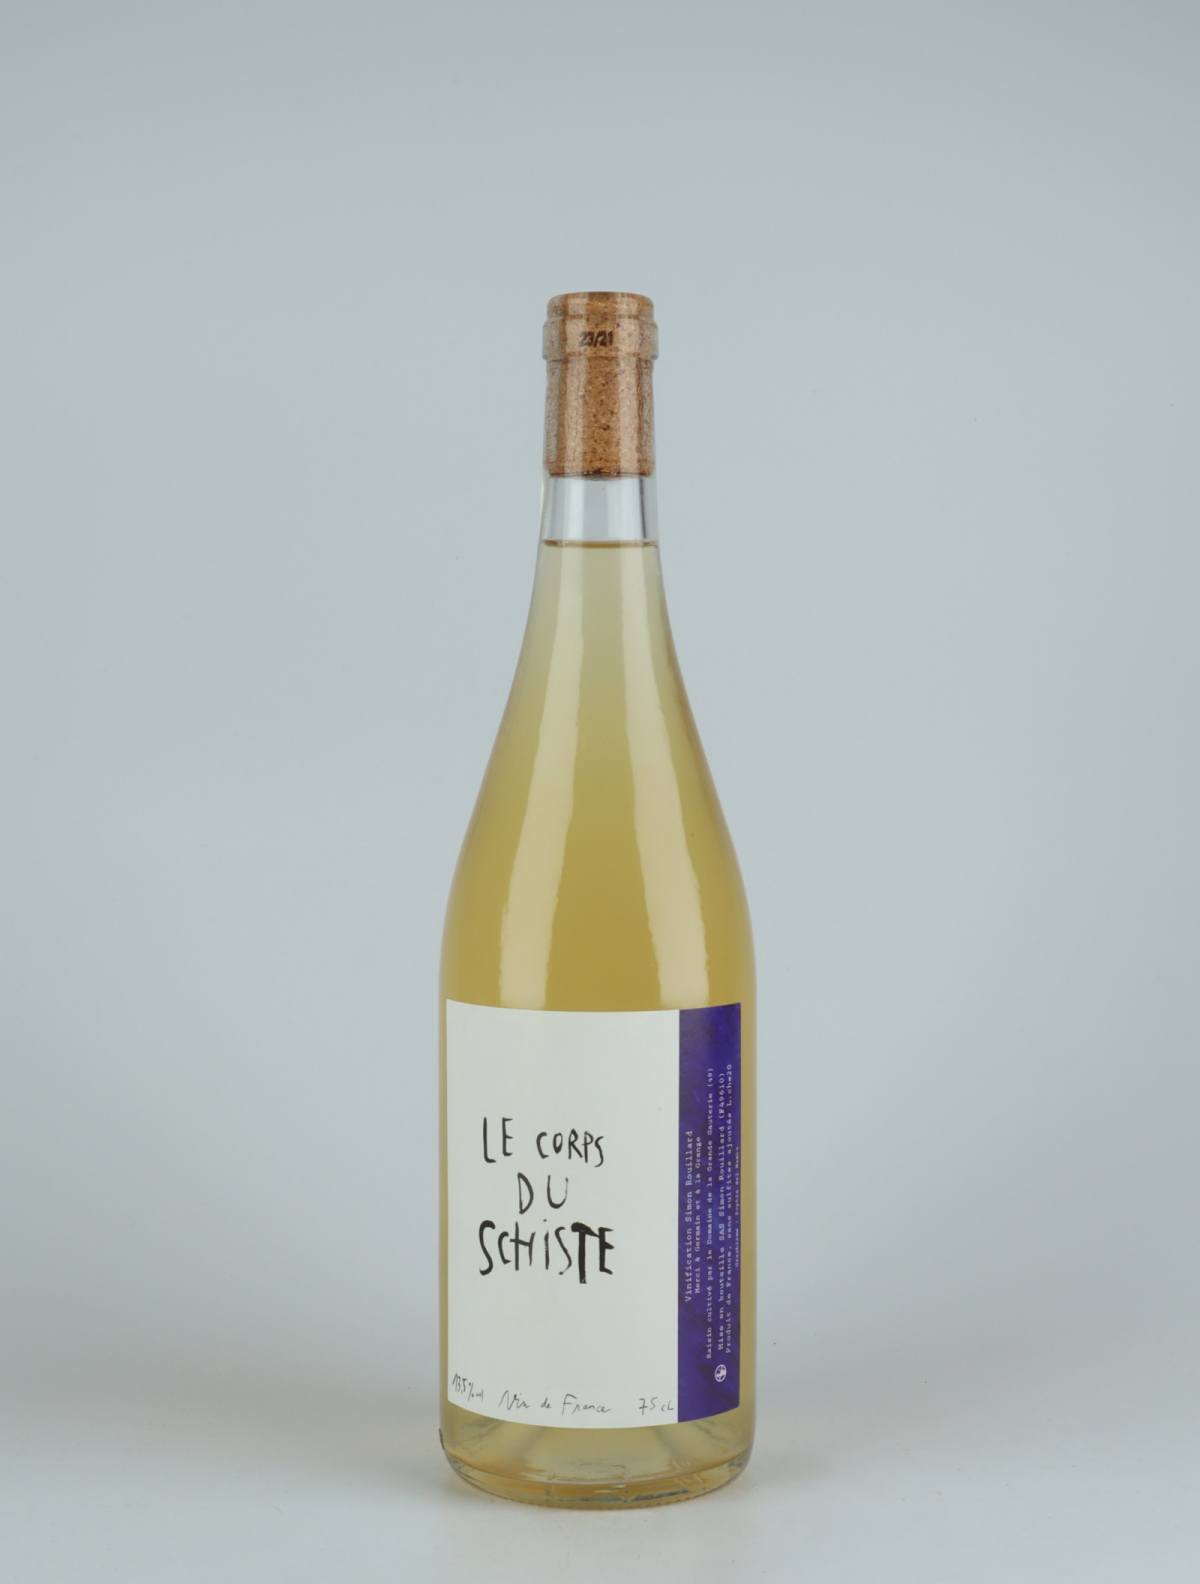 A bottle 2020 Le Corps du Schiste White wine from Simon Rouillard, Loire in France